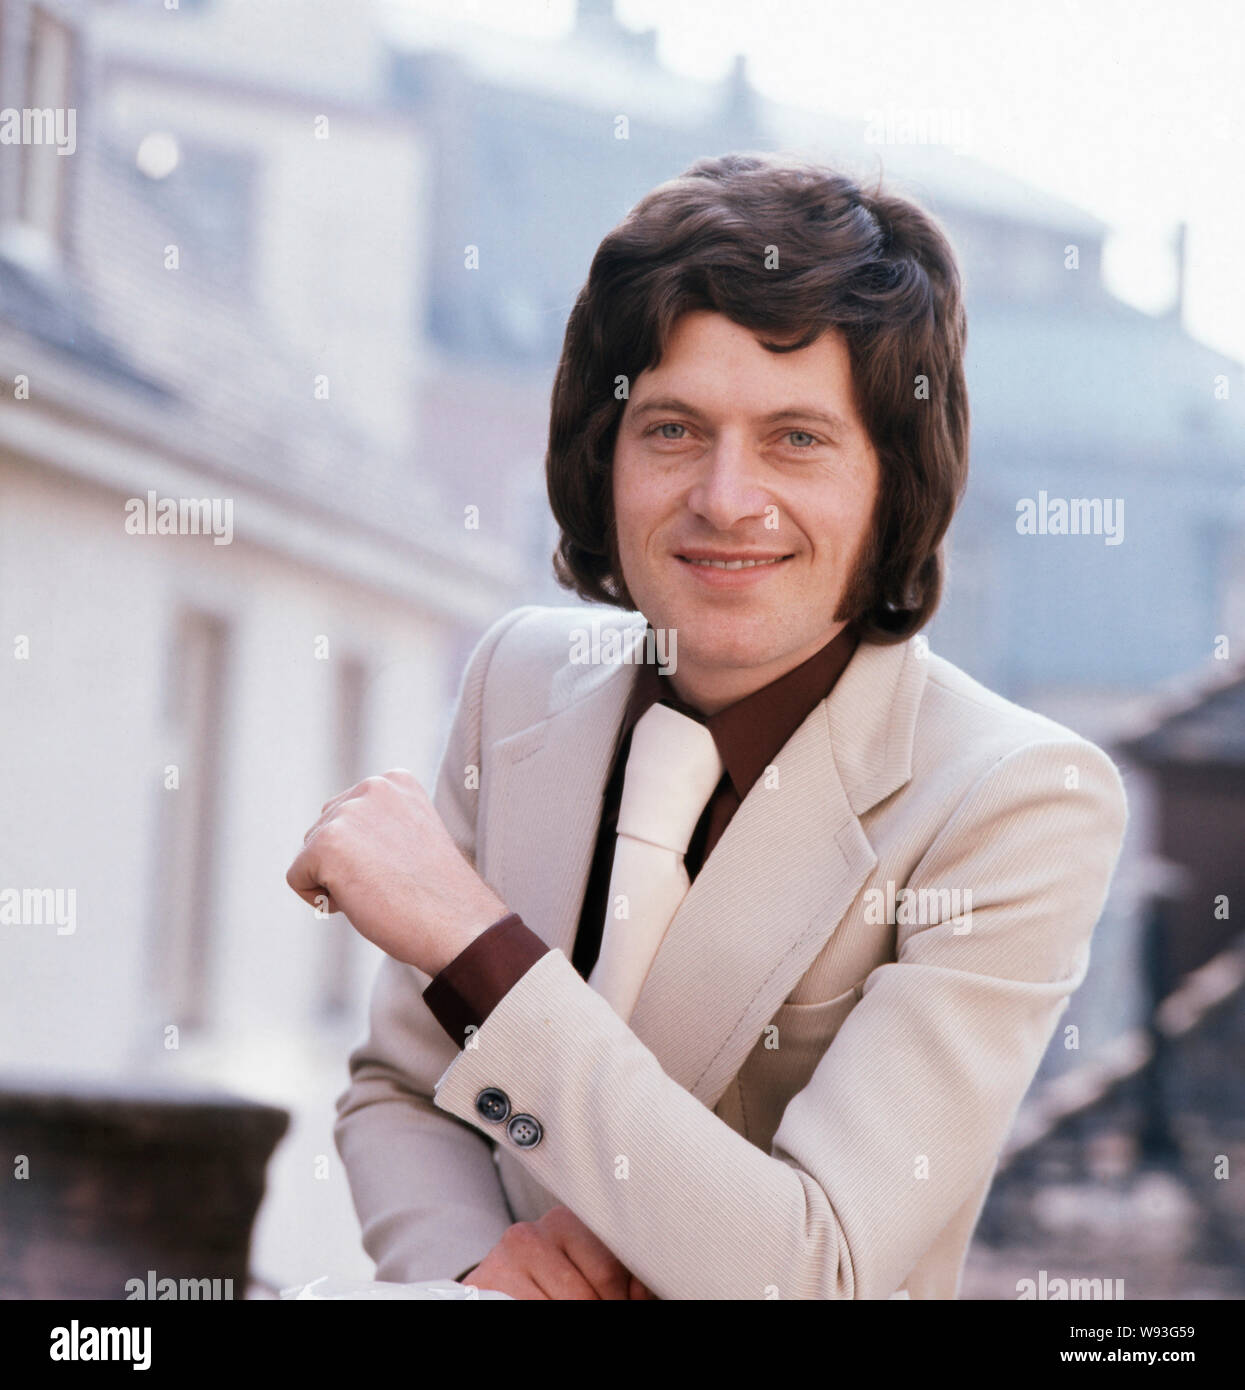 Der deutsche Schlagerstar Manuel Thaler beim offiziellen Fotoshooting zur Single "Komm geh' mit mir", Deutschland 1973. Stock Photo